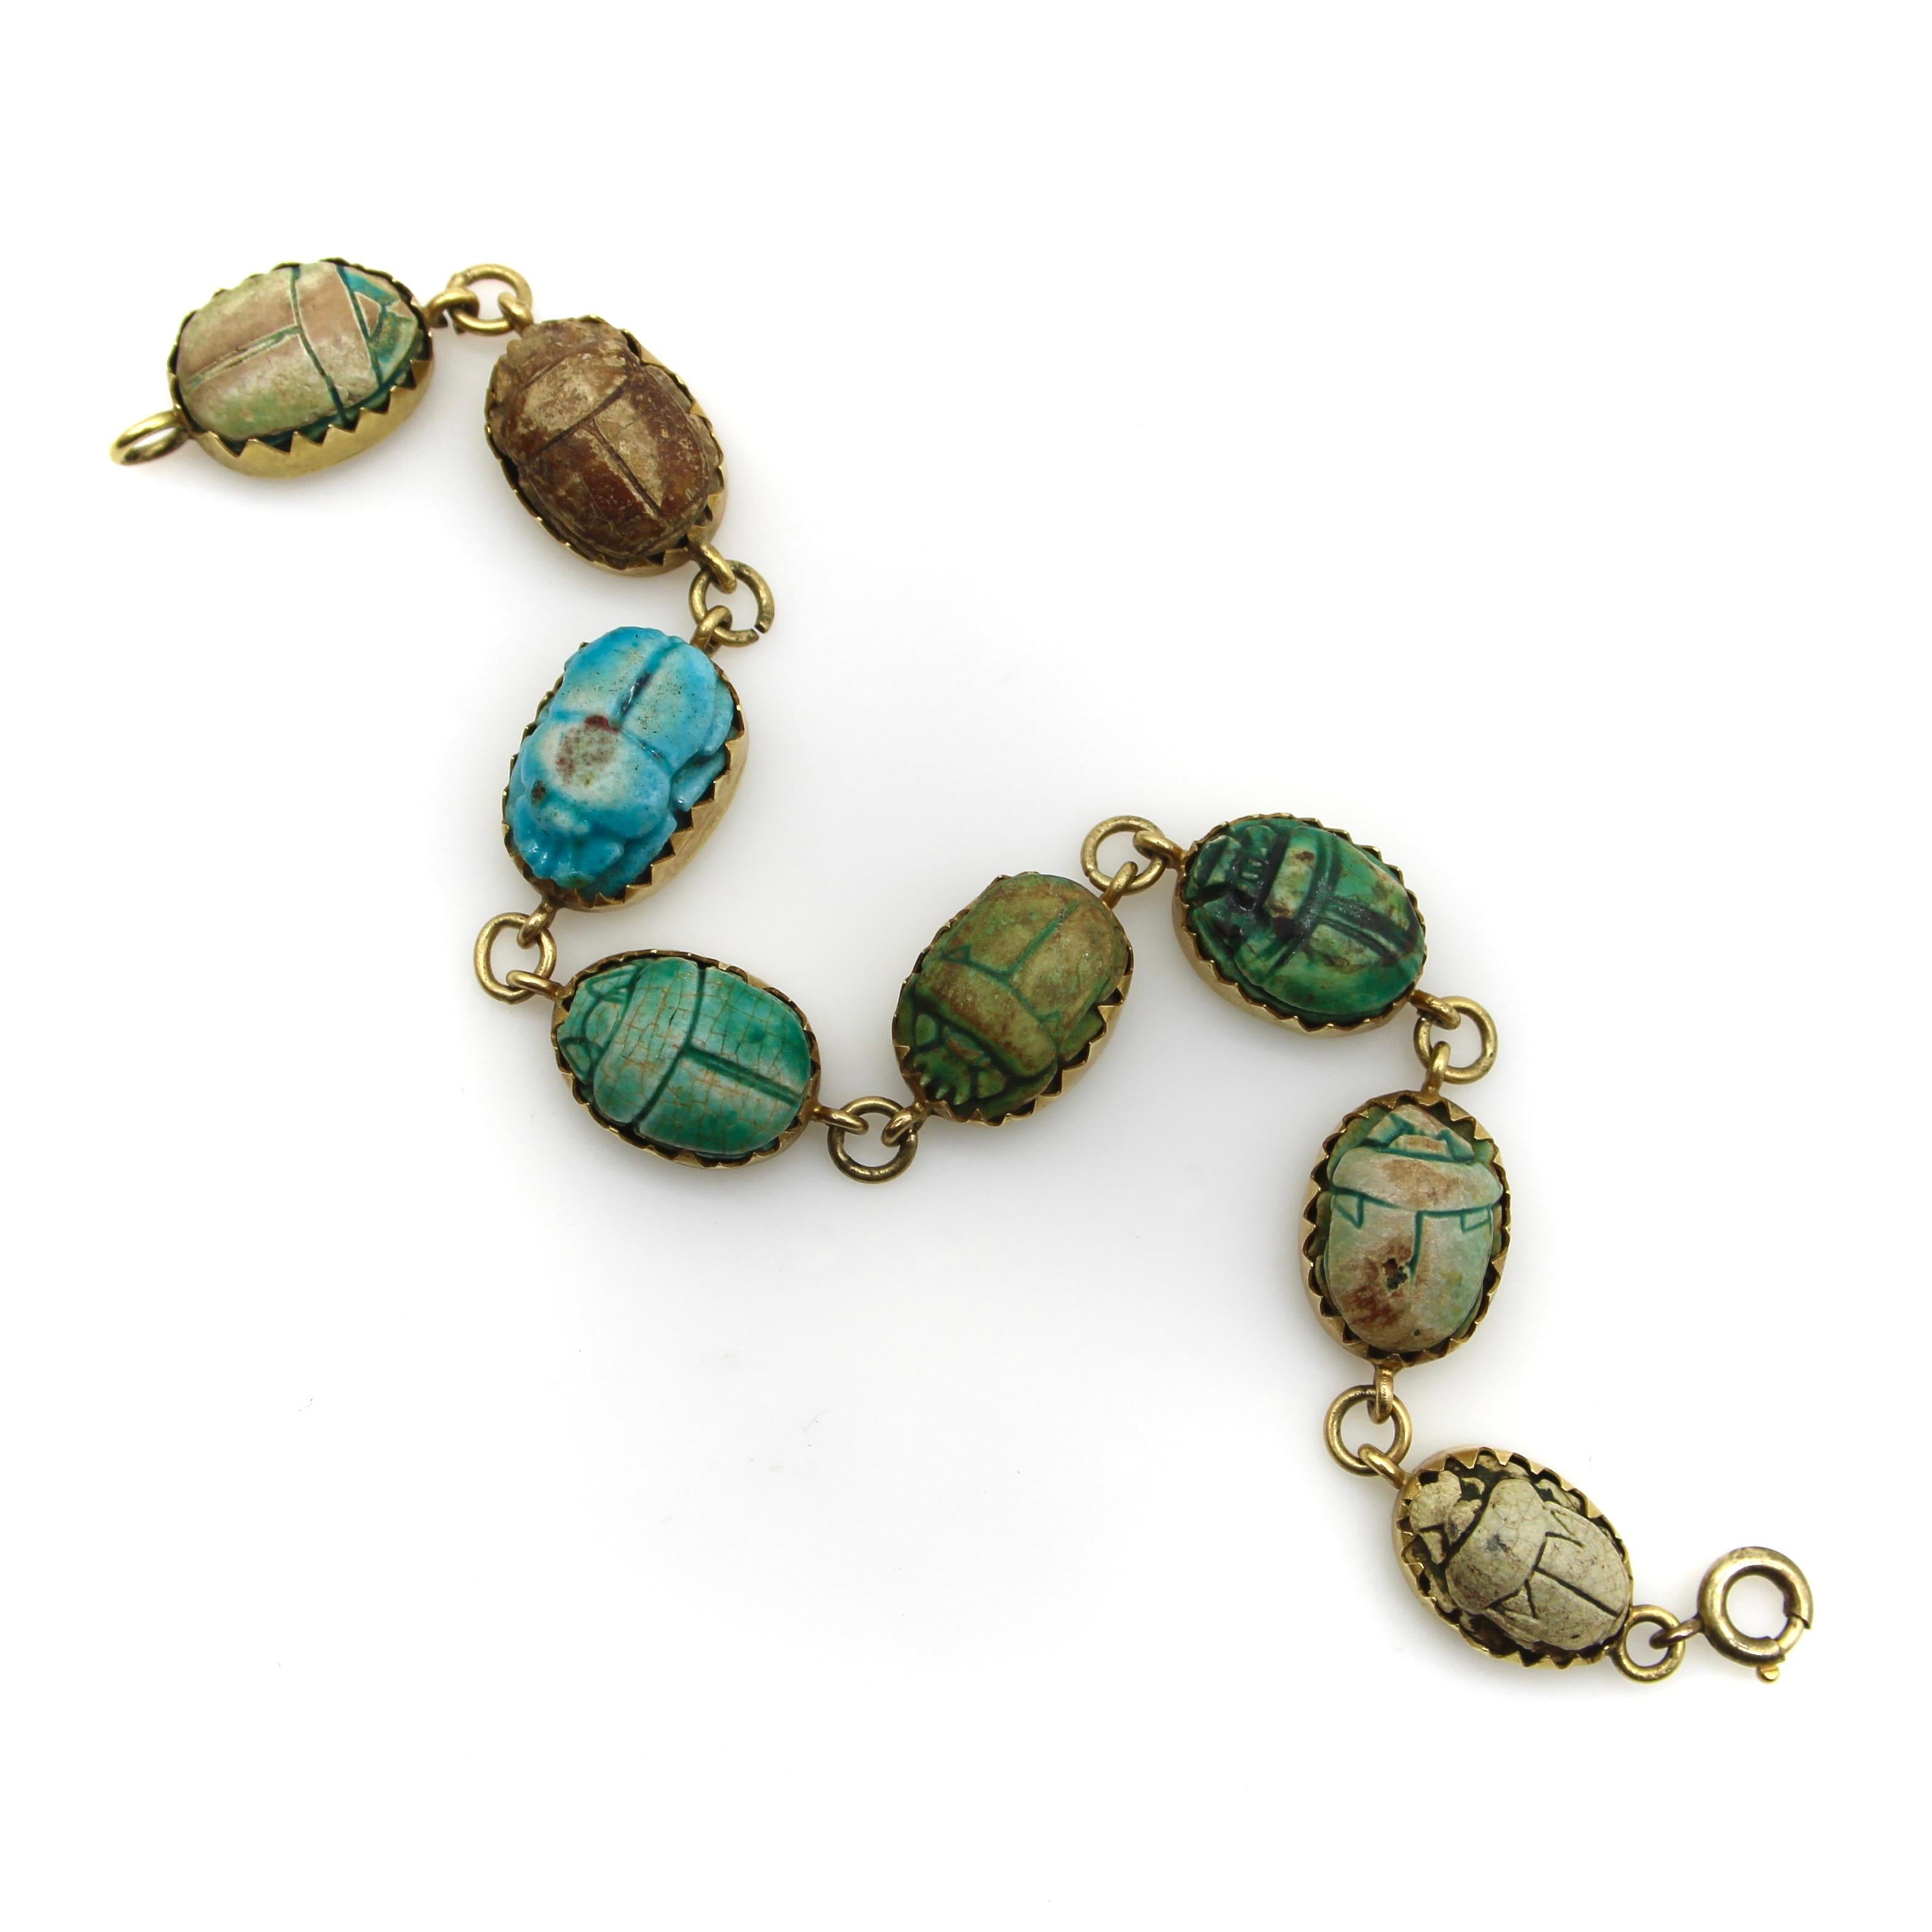 Ce bracelet en or 18 carats contient huit scarabées dans différentes nuances de bleus, de verts et de bruns, chacun portant un hiéroglyphe unique. Fabriquées en argile, les perles de scarabée prennent leur couleur lorsque le cuivre contenu dans